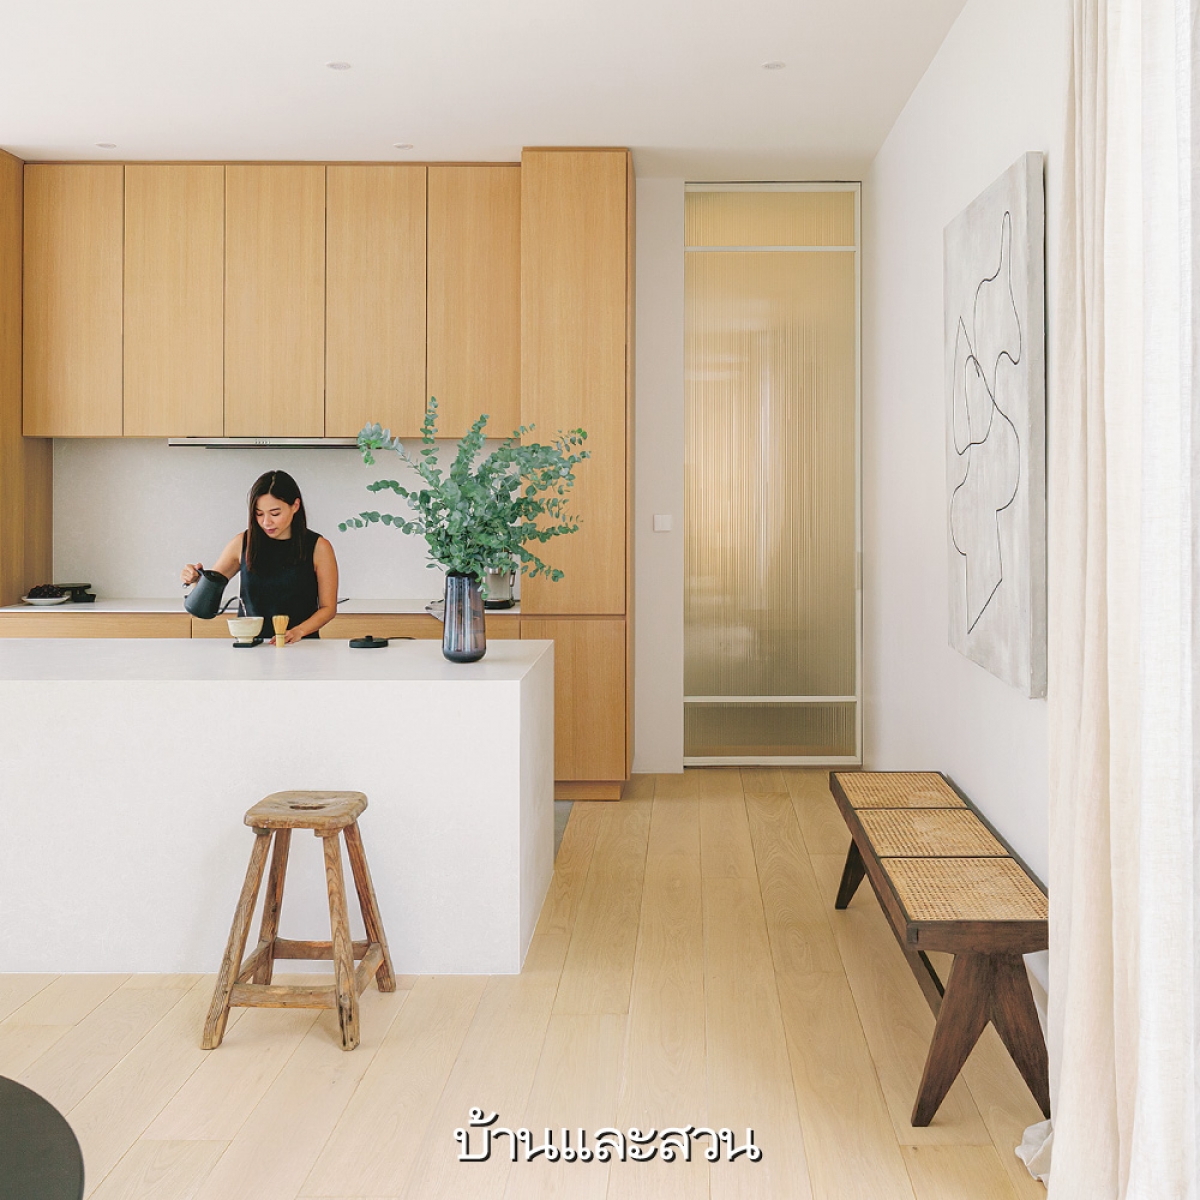 Một lọ cây xanh làm tăng sự sinh động hơn cho căn bếp tối giản chỉ với 2 màu gỗ và trắng.